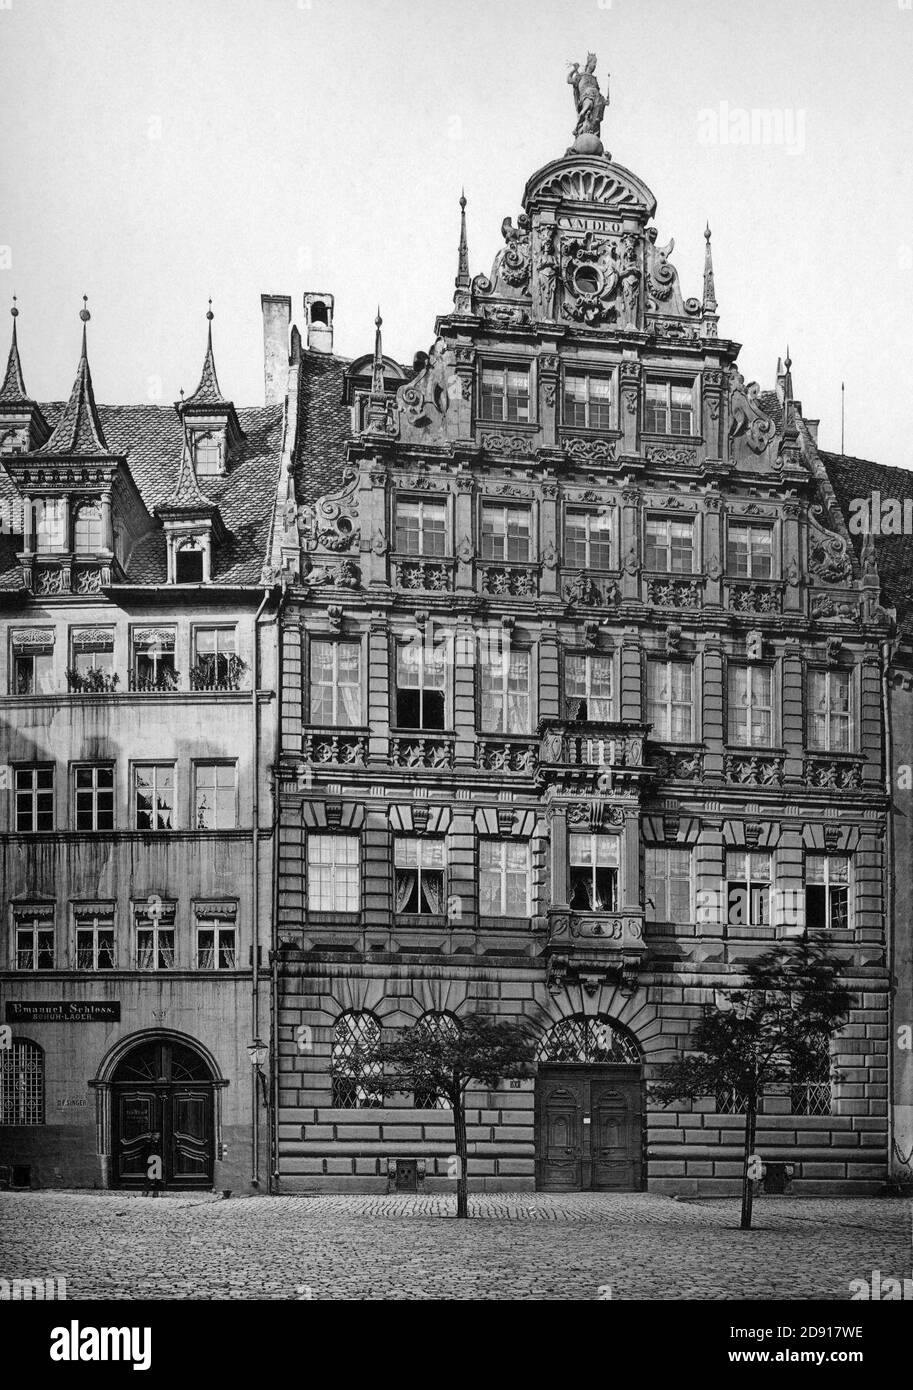 Karl Emil Otto Fritsch-Denkmaeler Deutscher Renaissance-1891-Nuernberg-Pellerhaus zu Nuernberg Aegidienplatz 1605 Facade. Stock Photo